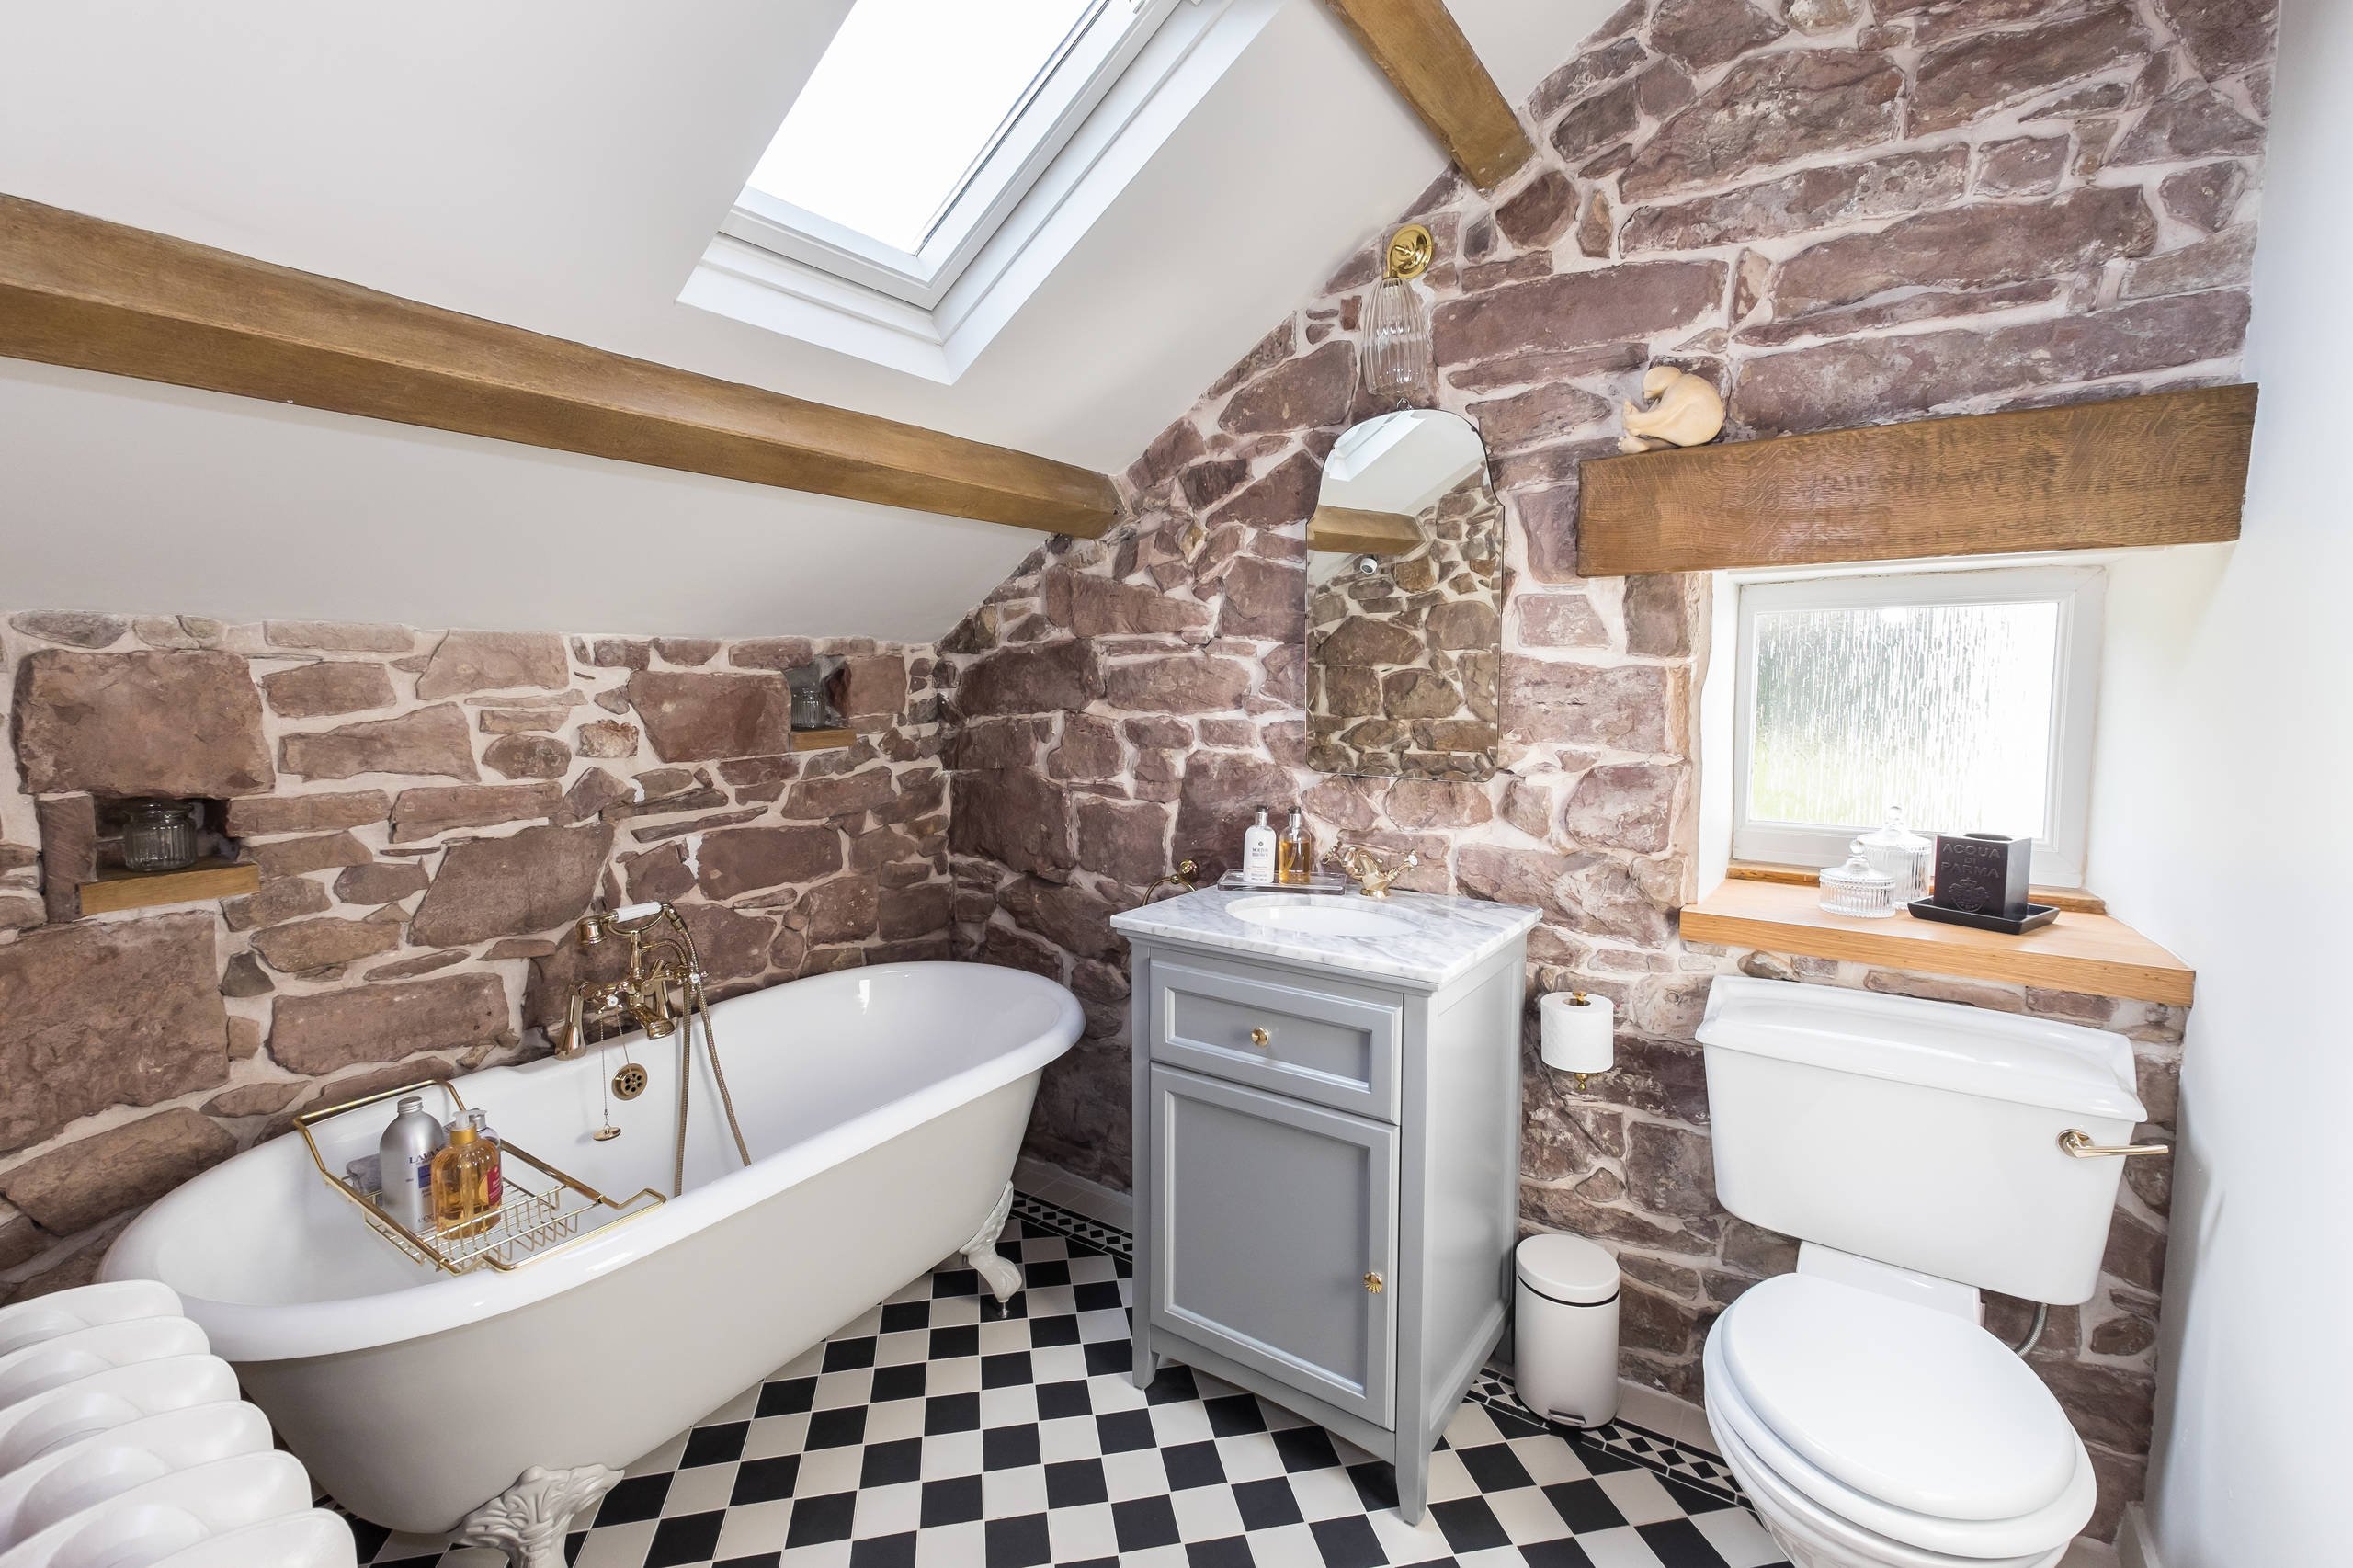 Ванная комната на даче (74 фото): дизайн и отделка в дачном доме, идеи оформления интерьера в частном доме, секреты удачной планировки. как обустроить?